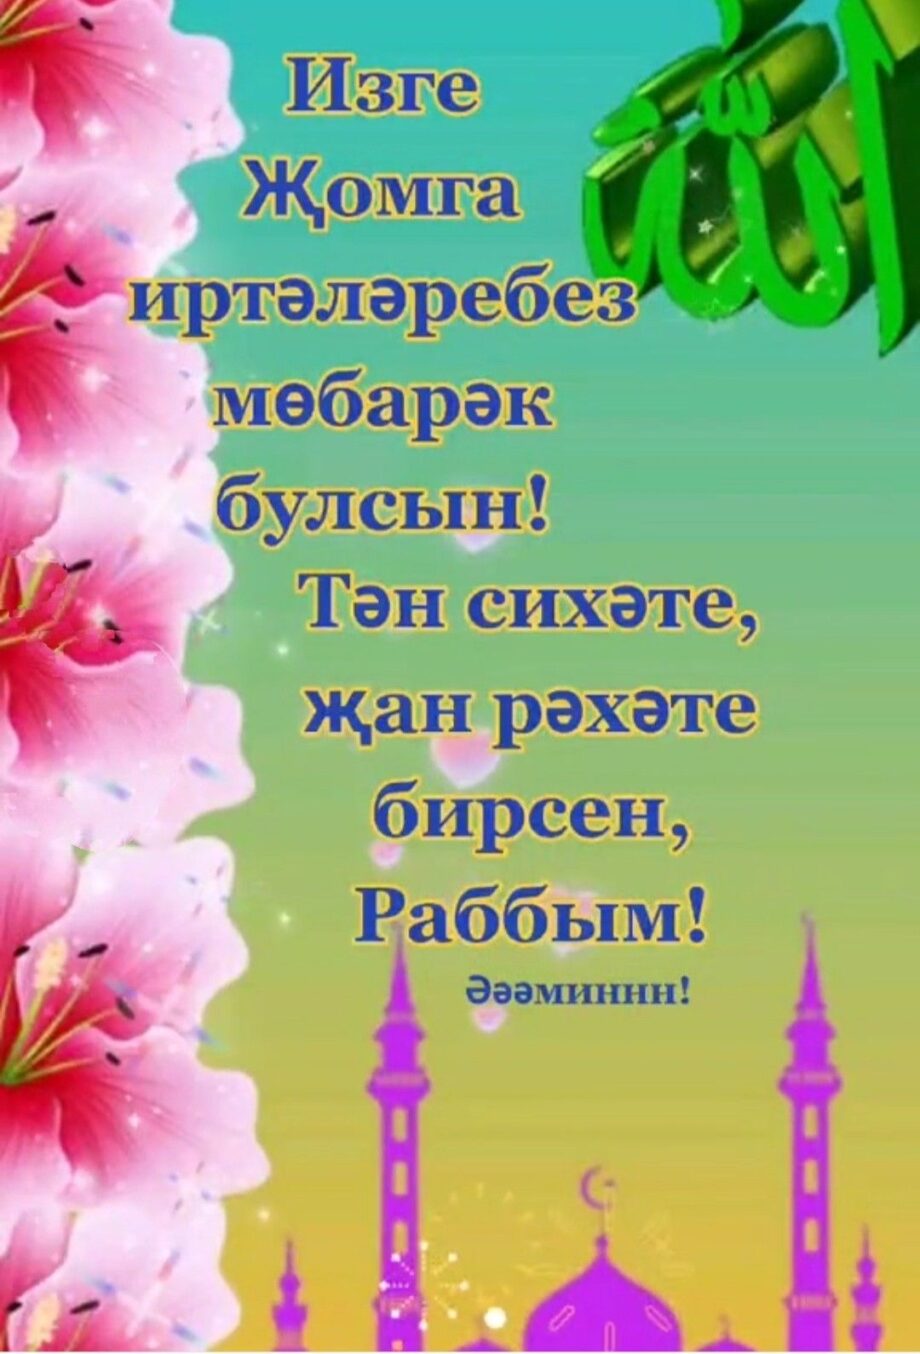 Поздравление С Днем Рождения на татарском открытка (6)